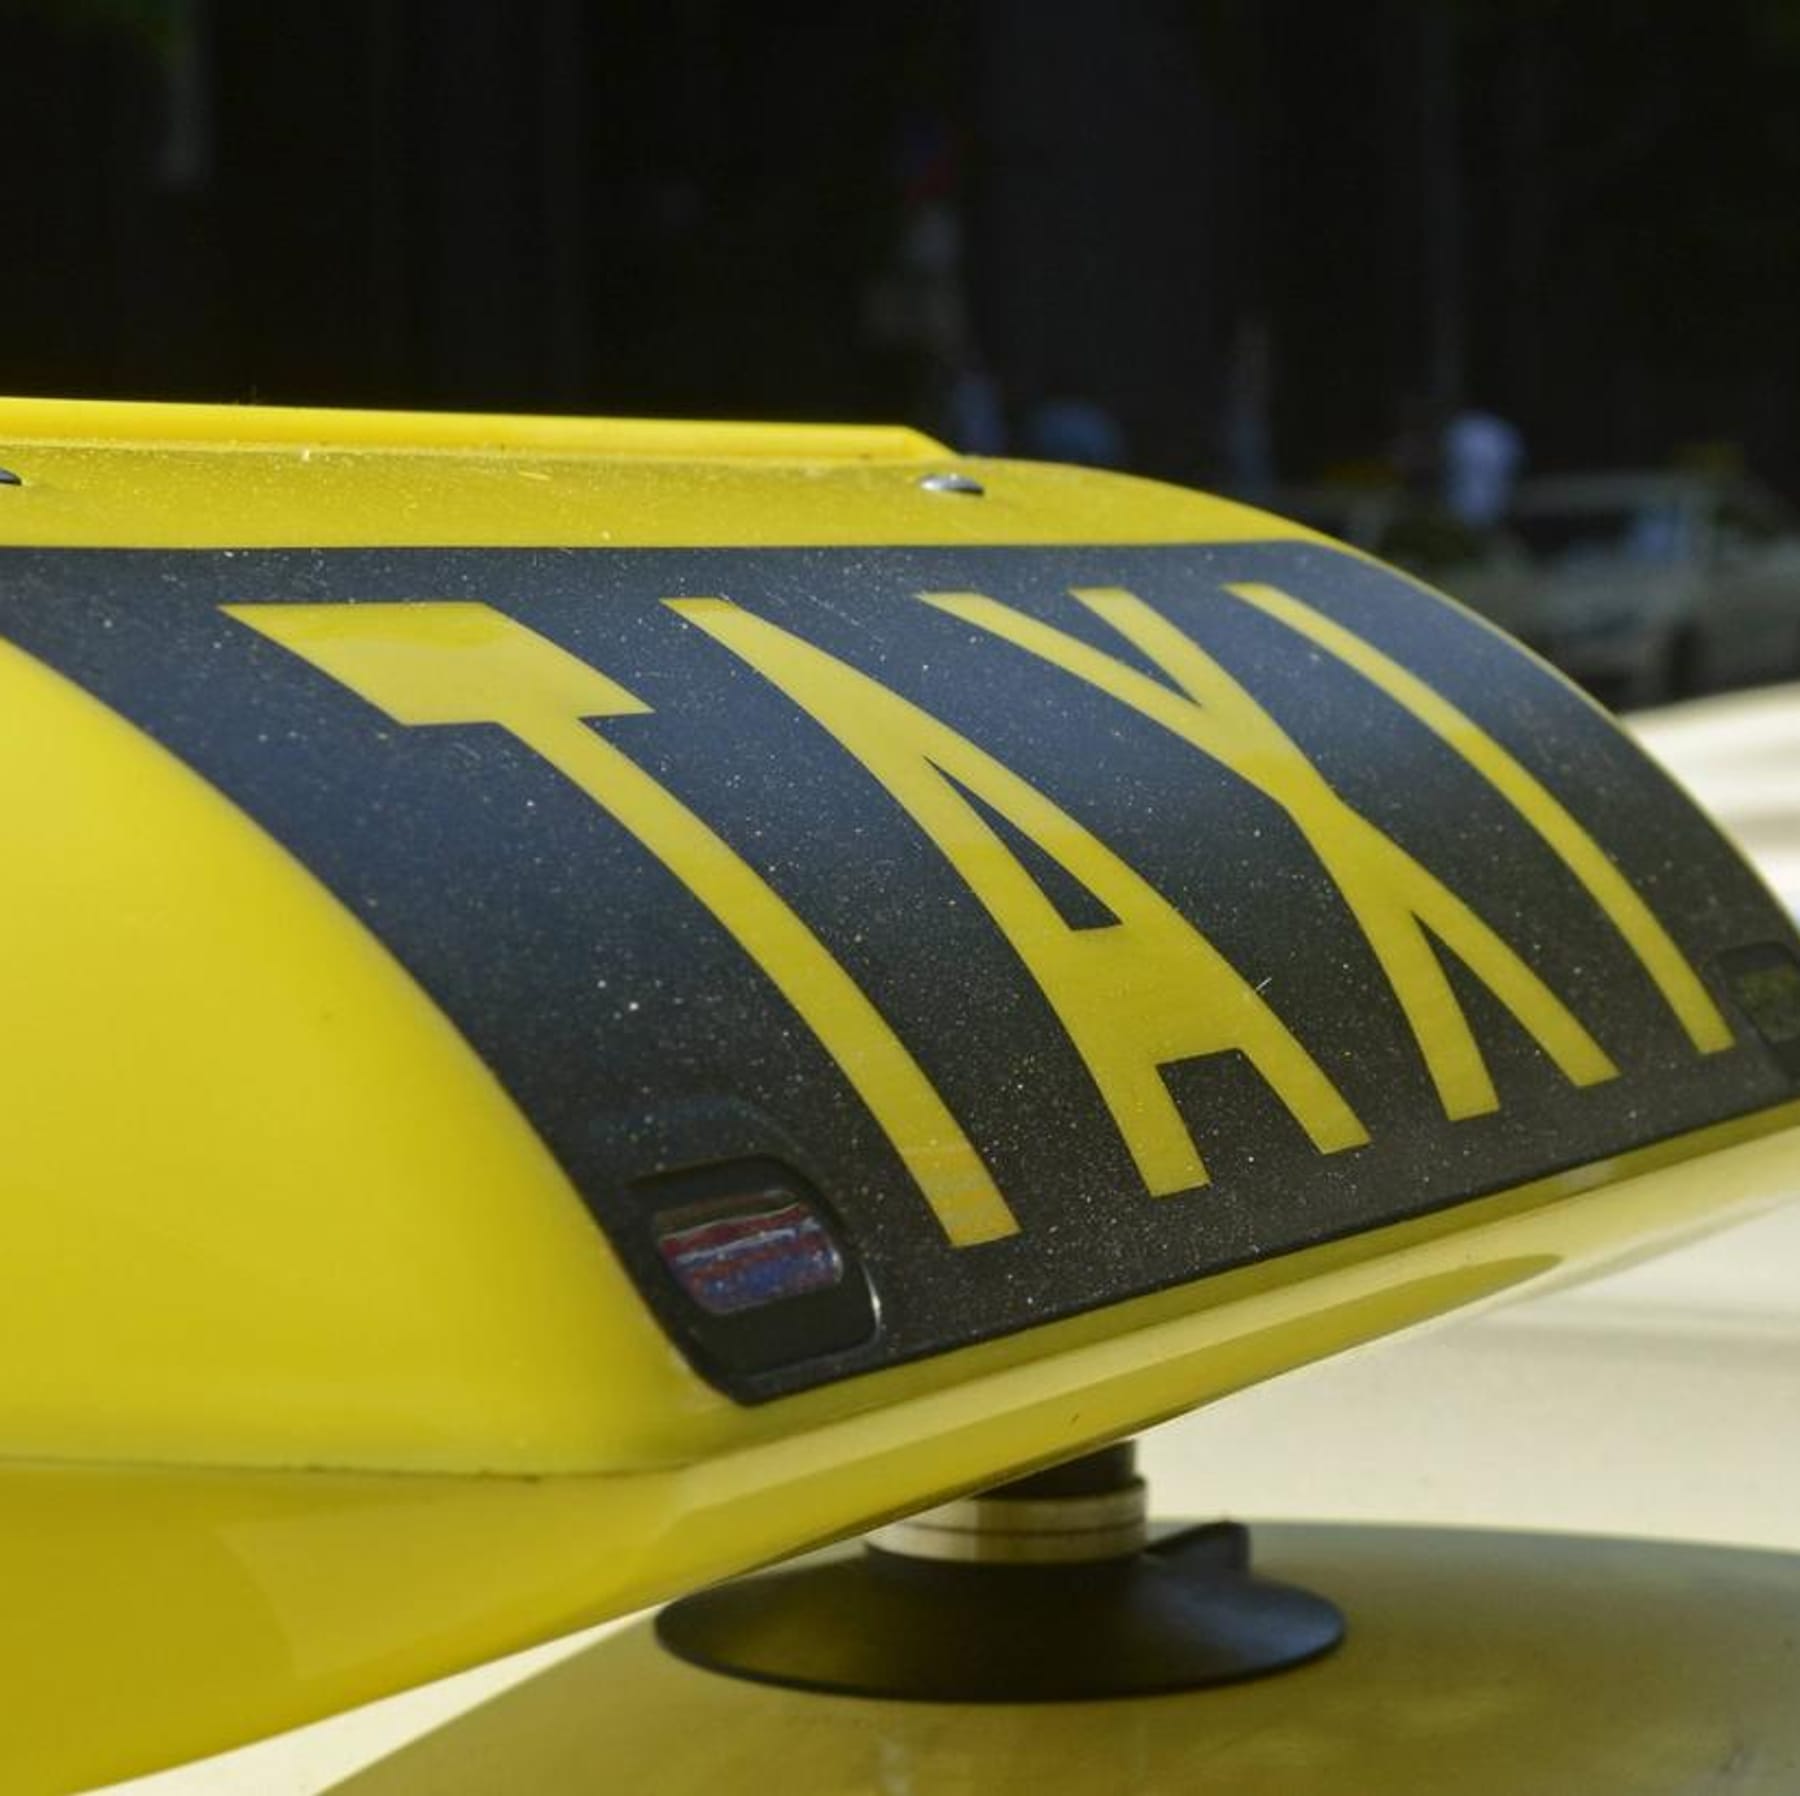 Taxi blinkt rot: Das bedeutet der stille Alarm - und so reagierst du richtig